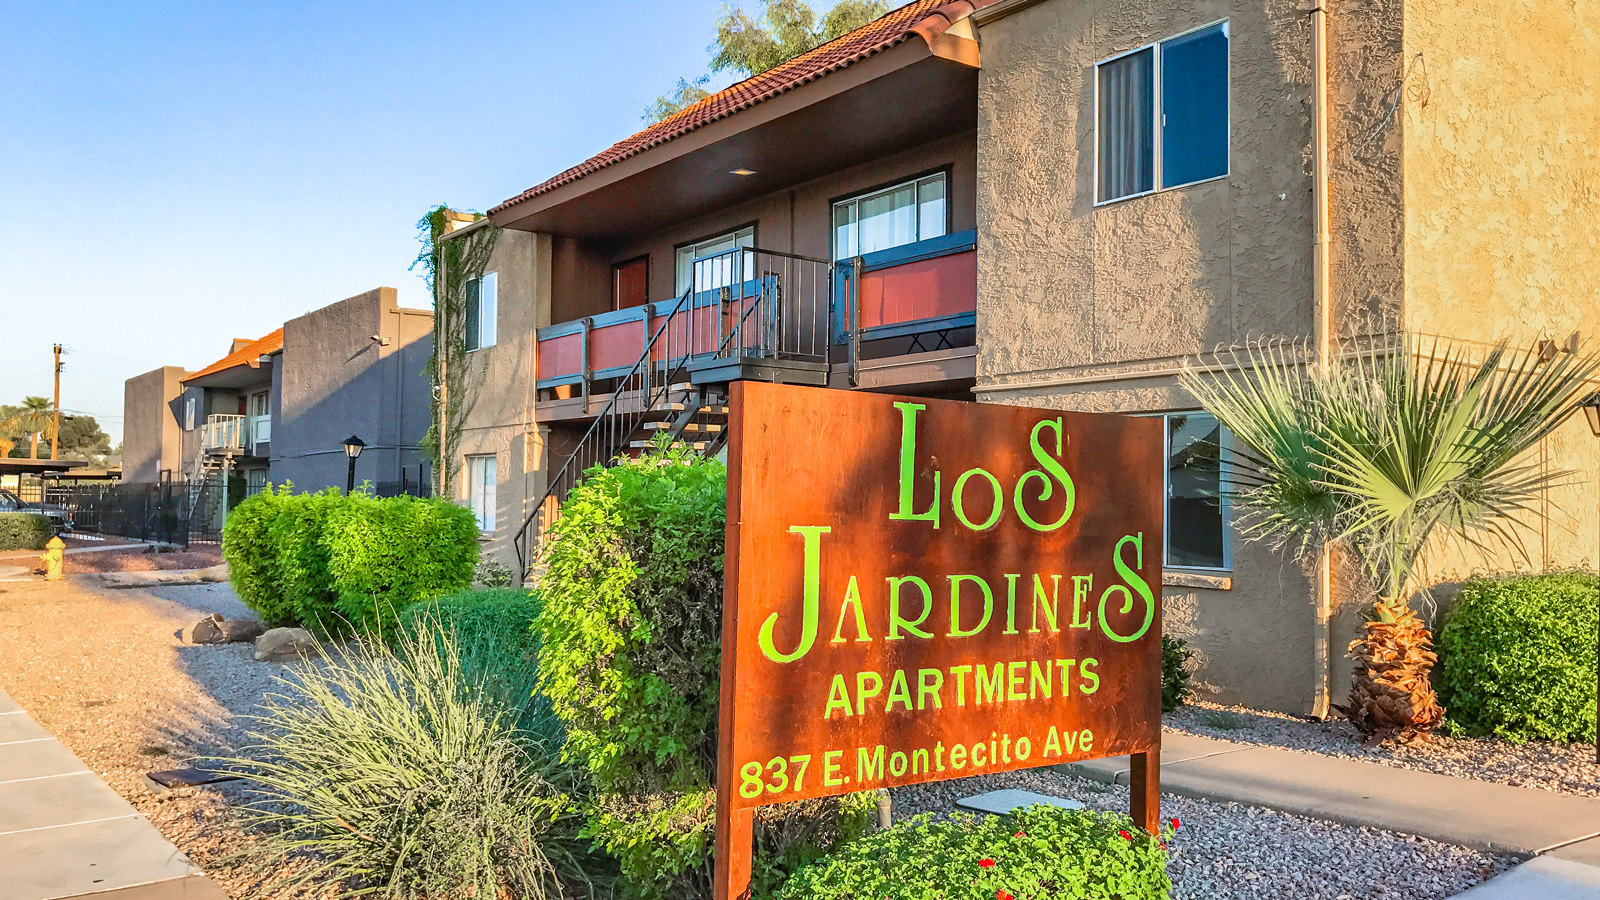 Los Jardines | 837 East Montecito Avenue, Phoenix, AZ 85014 | 28 Units | Built in 1981 | $2,187,500 | $78,125 Per Unit | $110.49 Per SF